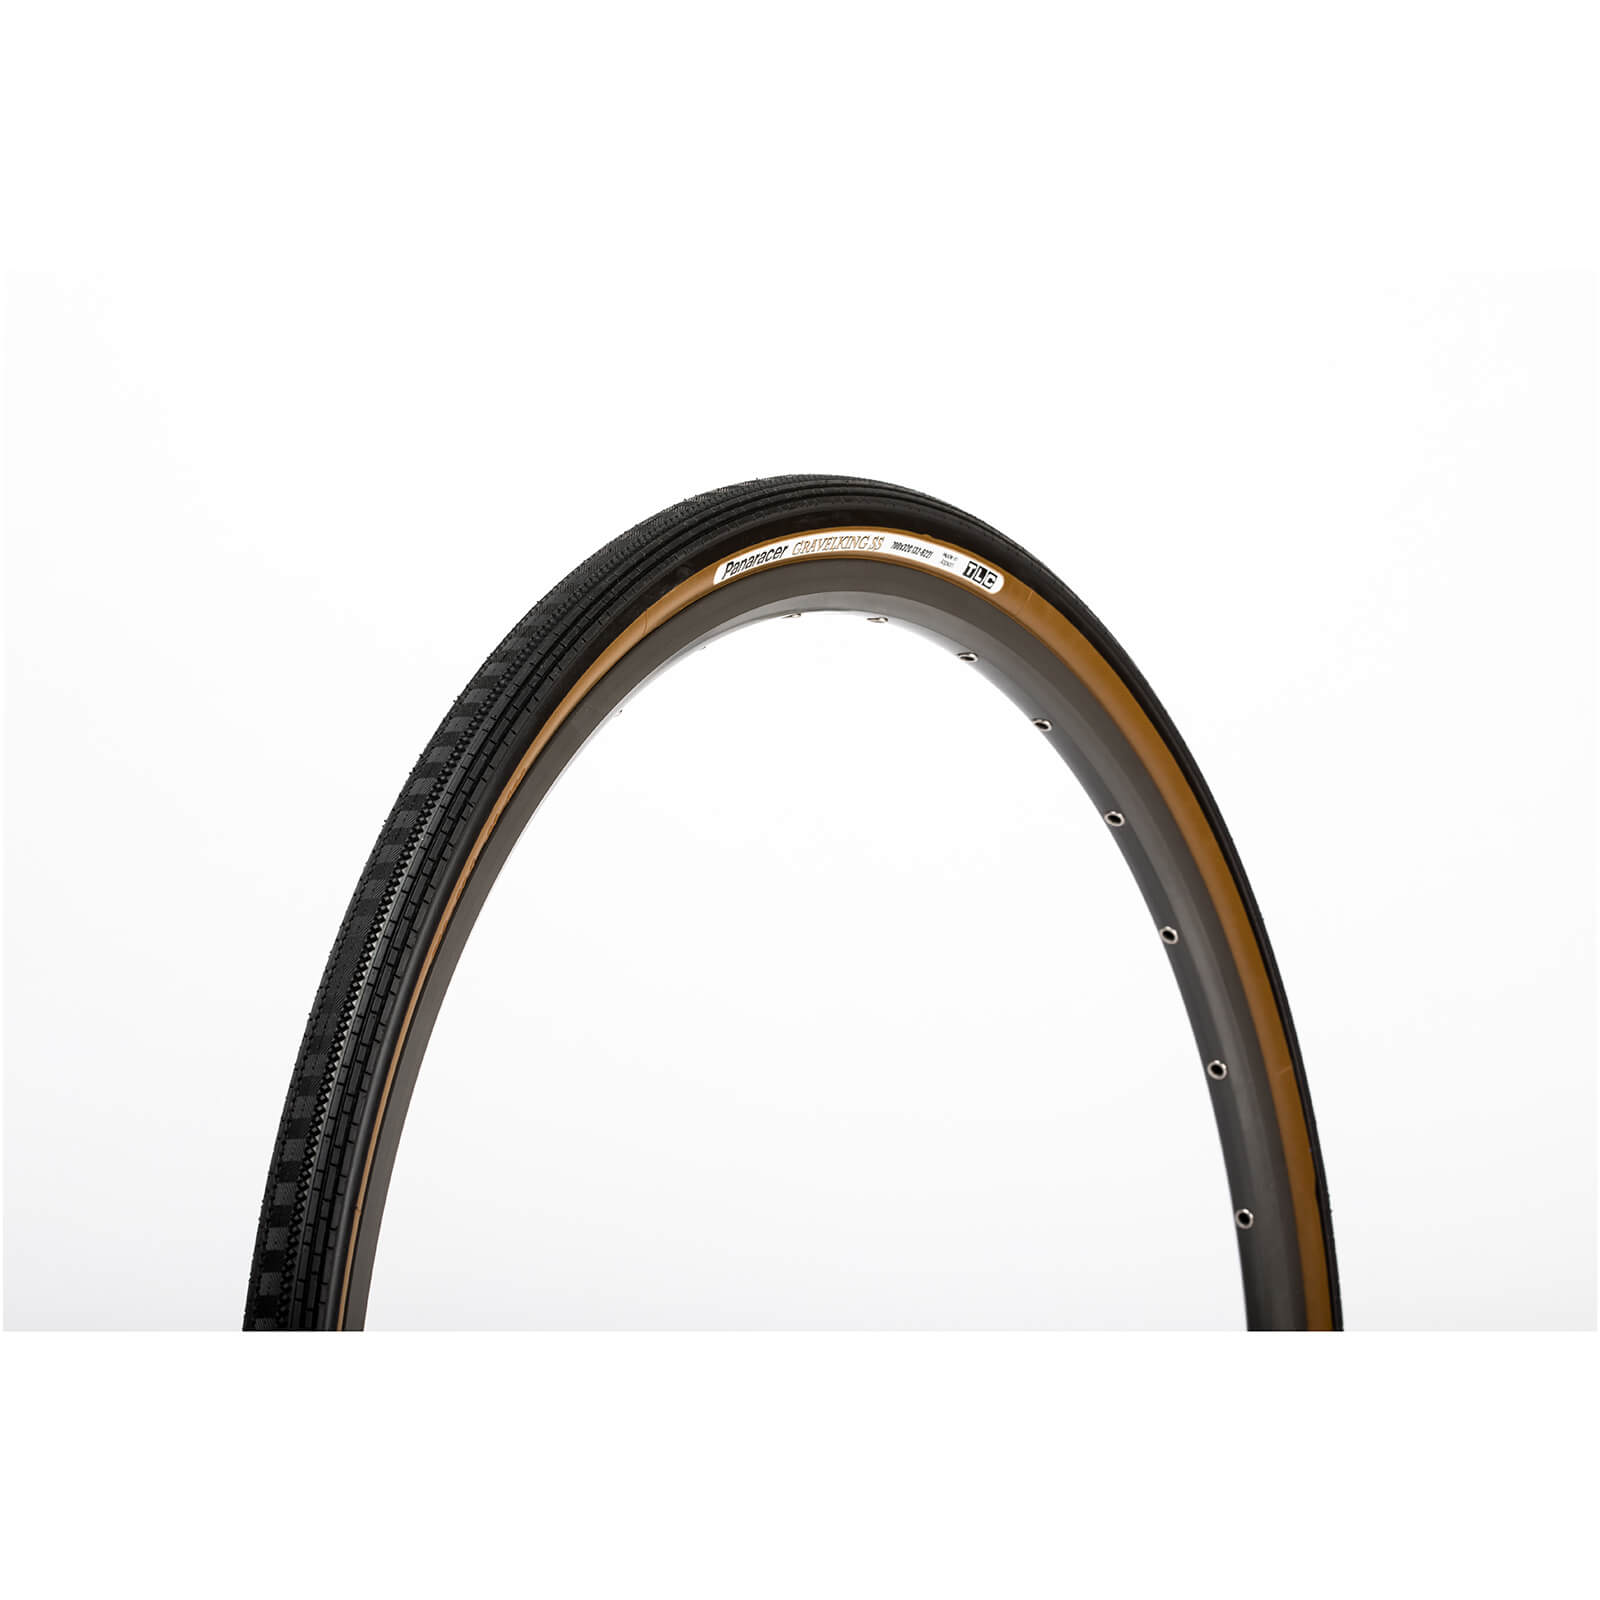 Panaracer Gravel King Semi Slick Gravel Tyre - 700 x 32c - black/brown